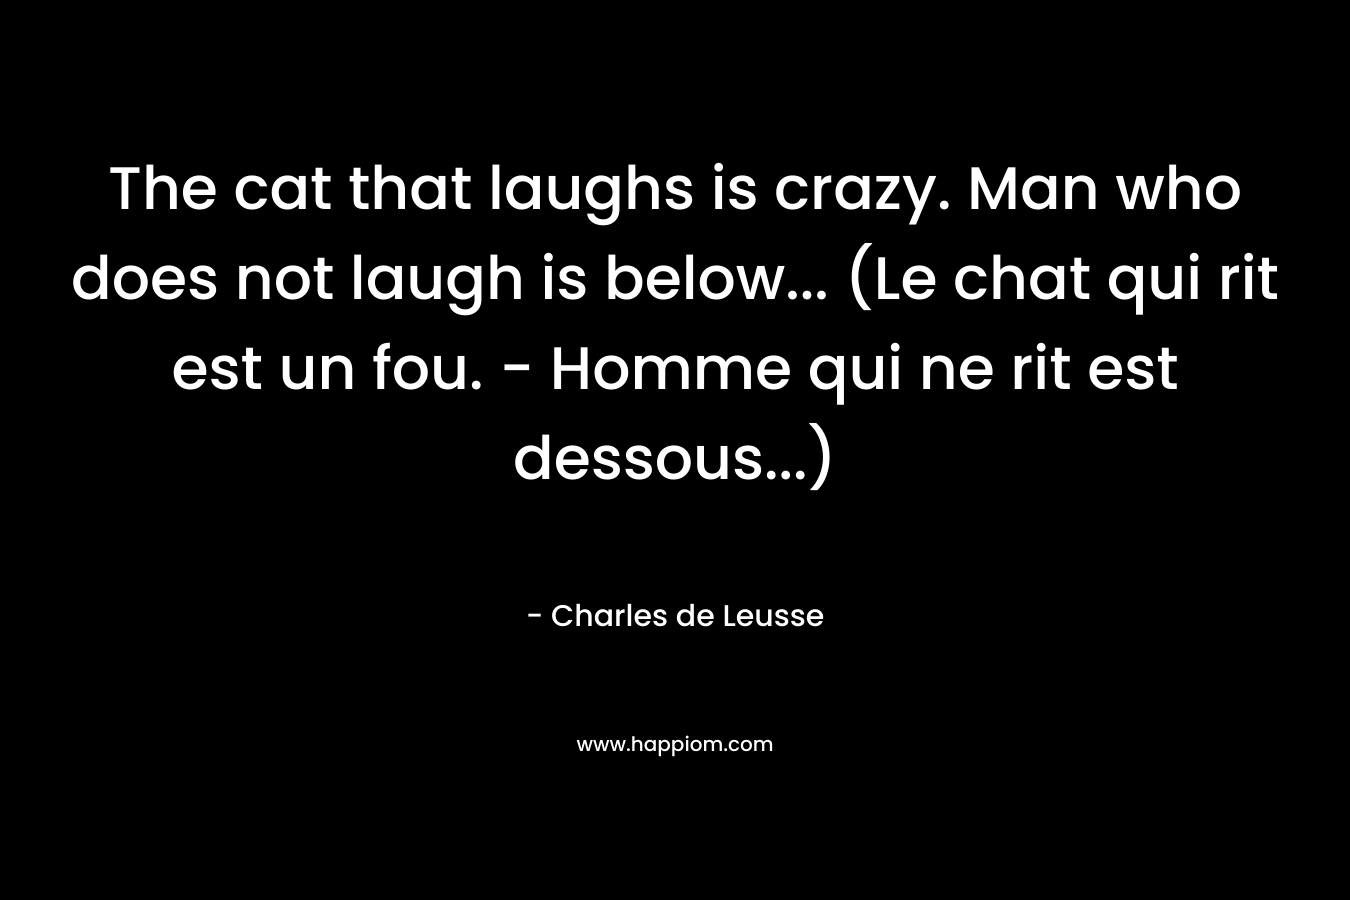 The cat that laughs is crazy. Man who does not laugh is below... (Le chat qui rit est un fou. - Homme qui ne rit est dessous...)